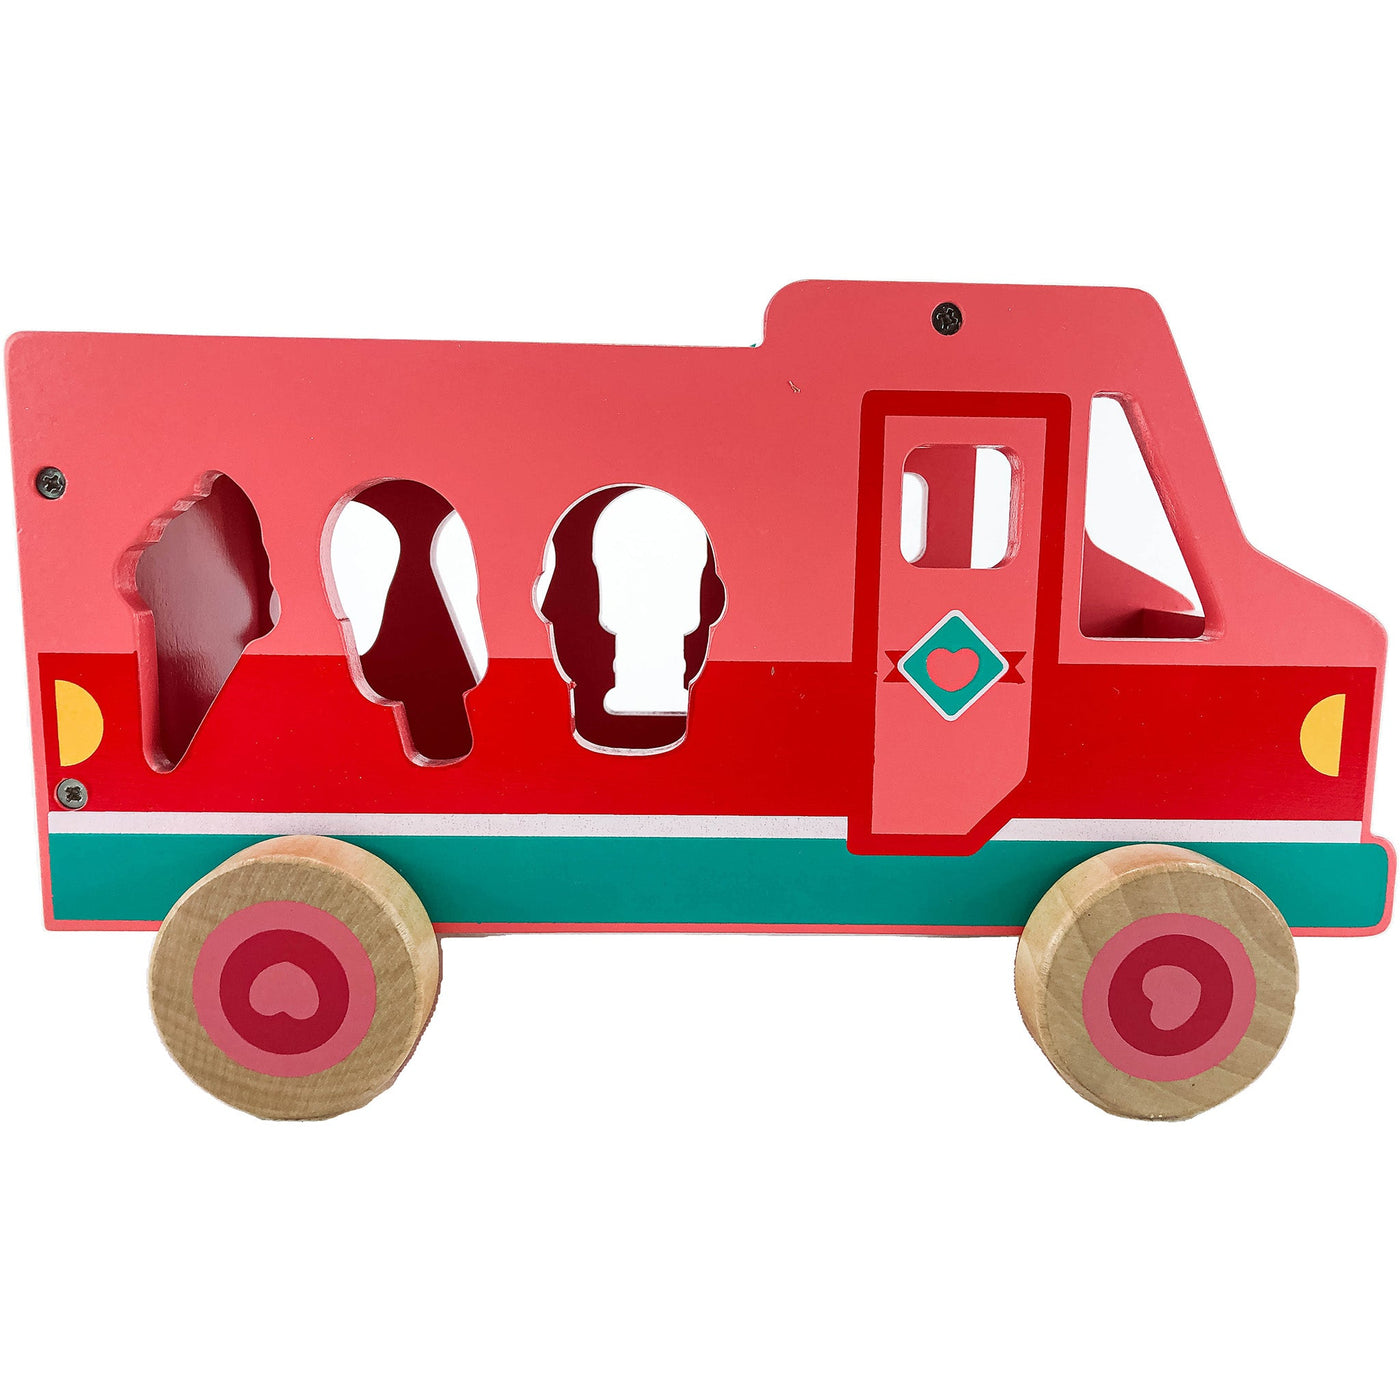 Camion "Camion glacier" de seconde main en bois pour enfant à partir de 18 mois - photo alternative_2